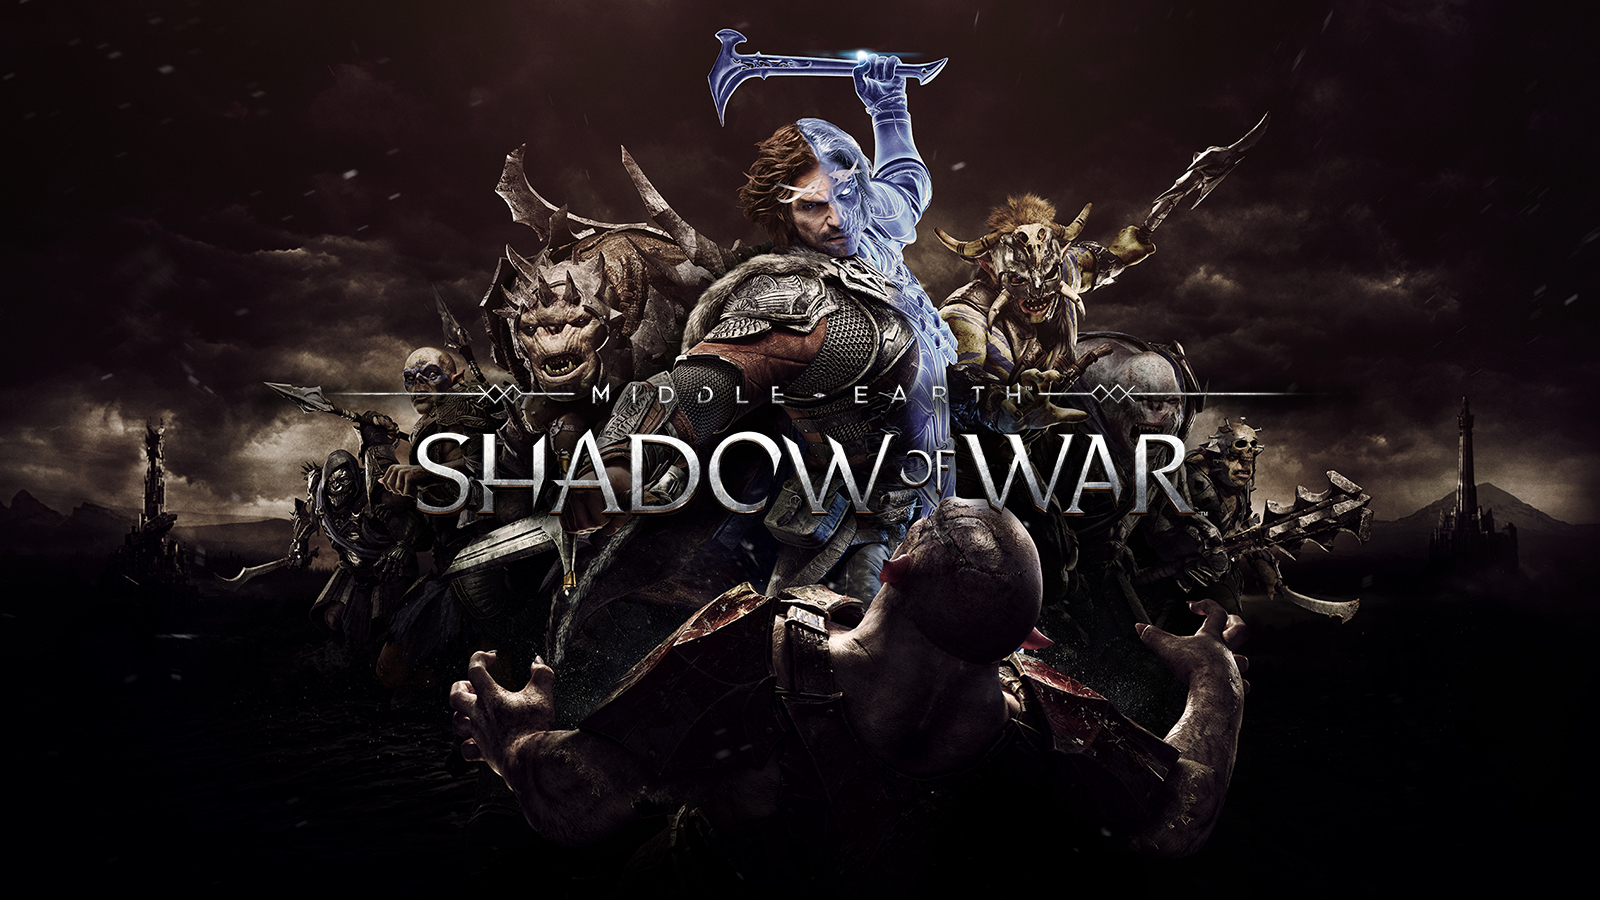 ยอมแล้วจ้า! Shadow of War เตรียมถอดระบบเติมเงินทั้งหมดออกจากเกม 17 กรกฎาคมนี้!